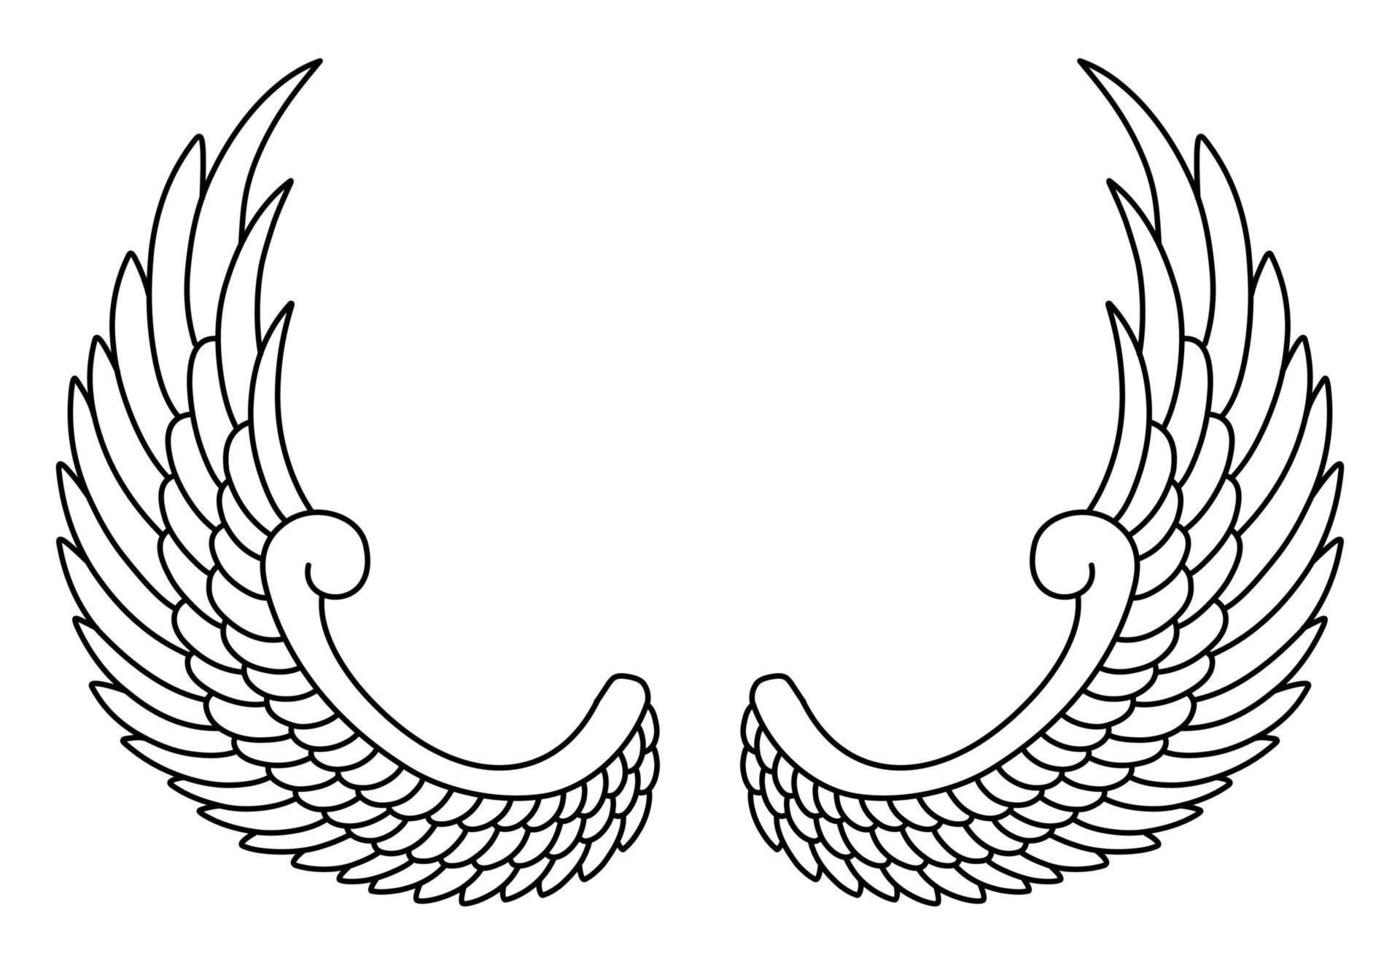 style de dessin au trait ailes d'ange vecteur libre